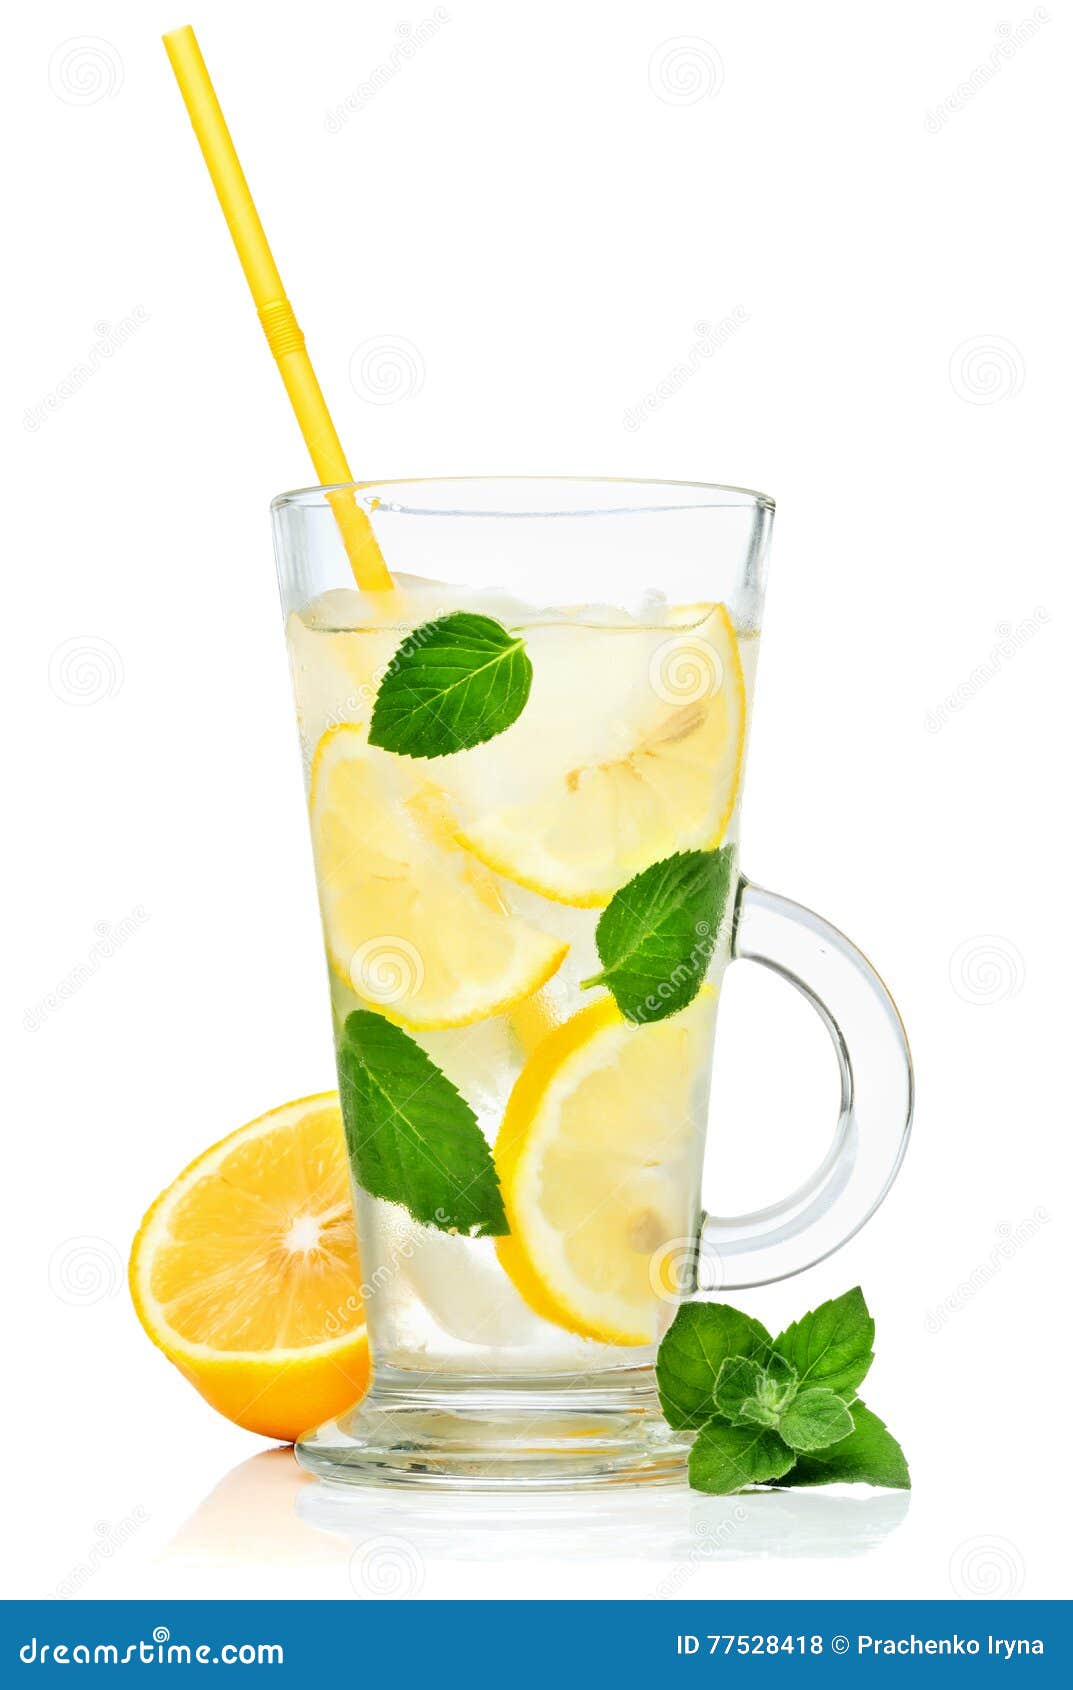 lemonade, water with lemon